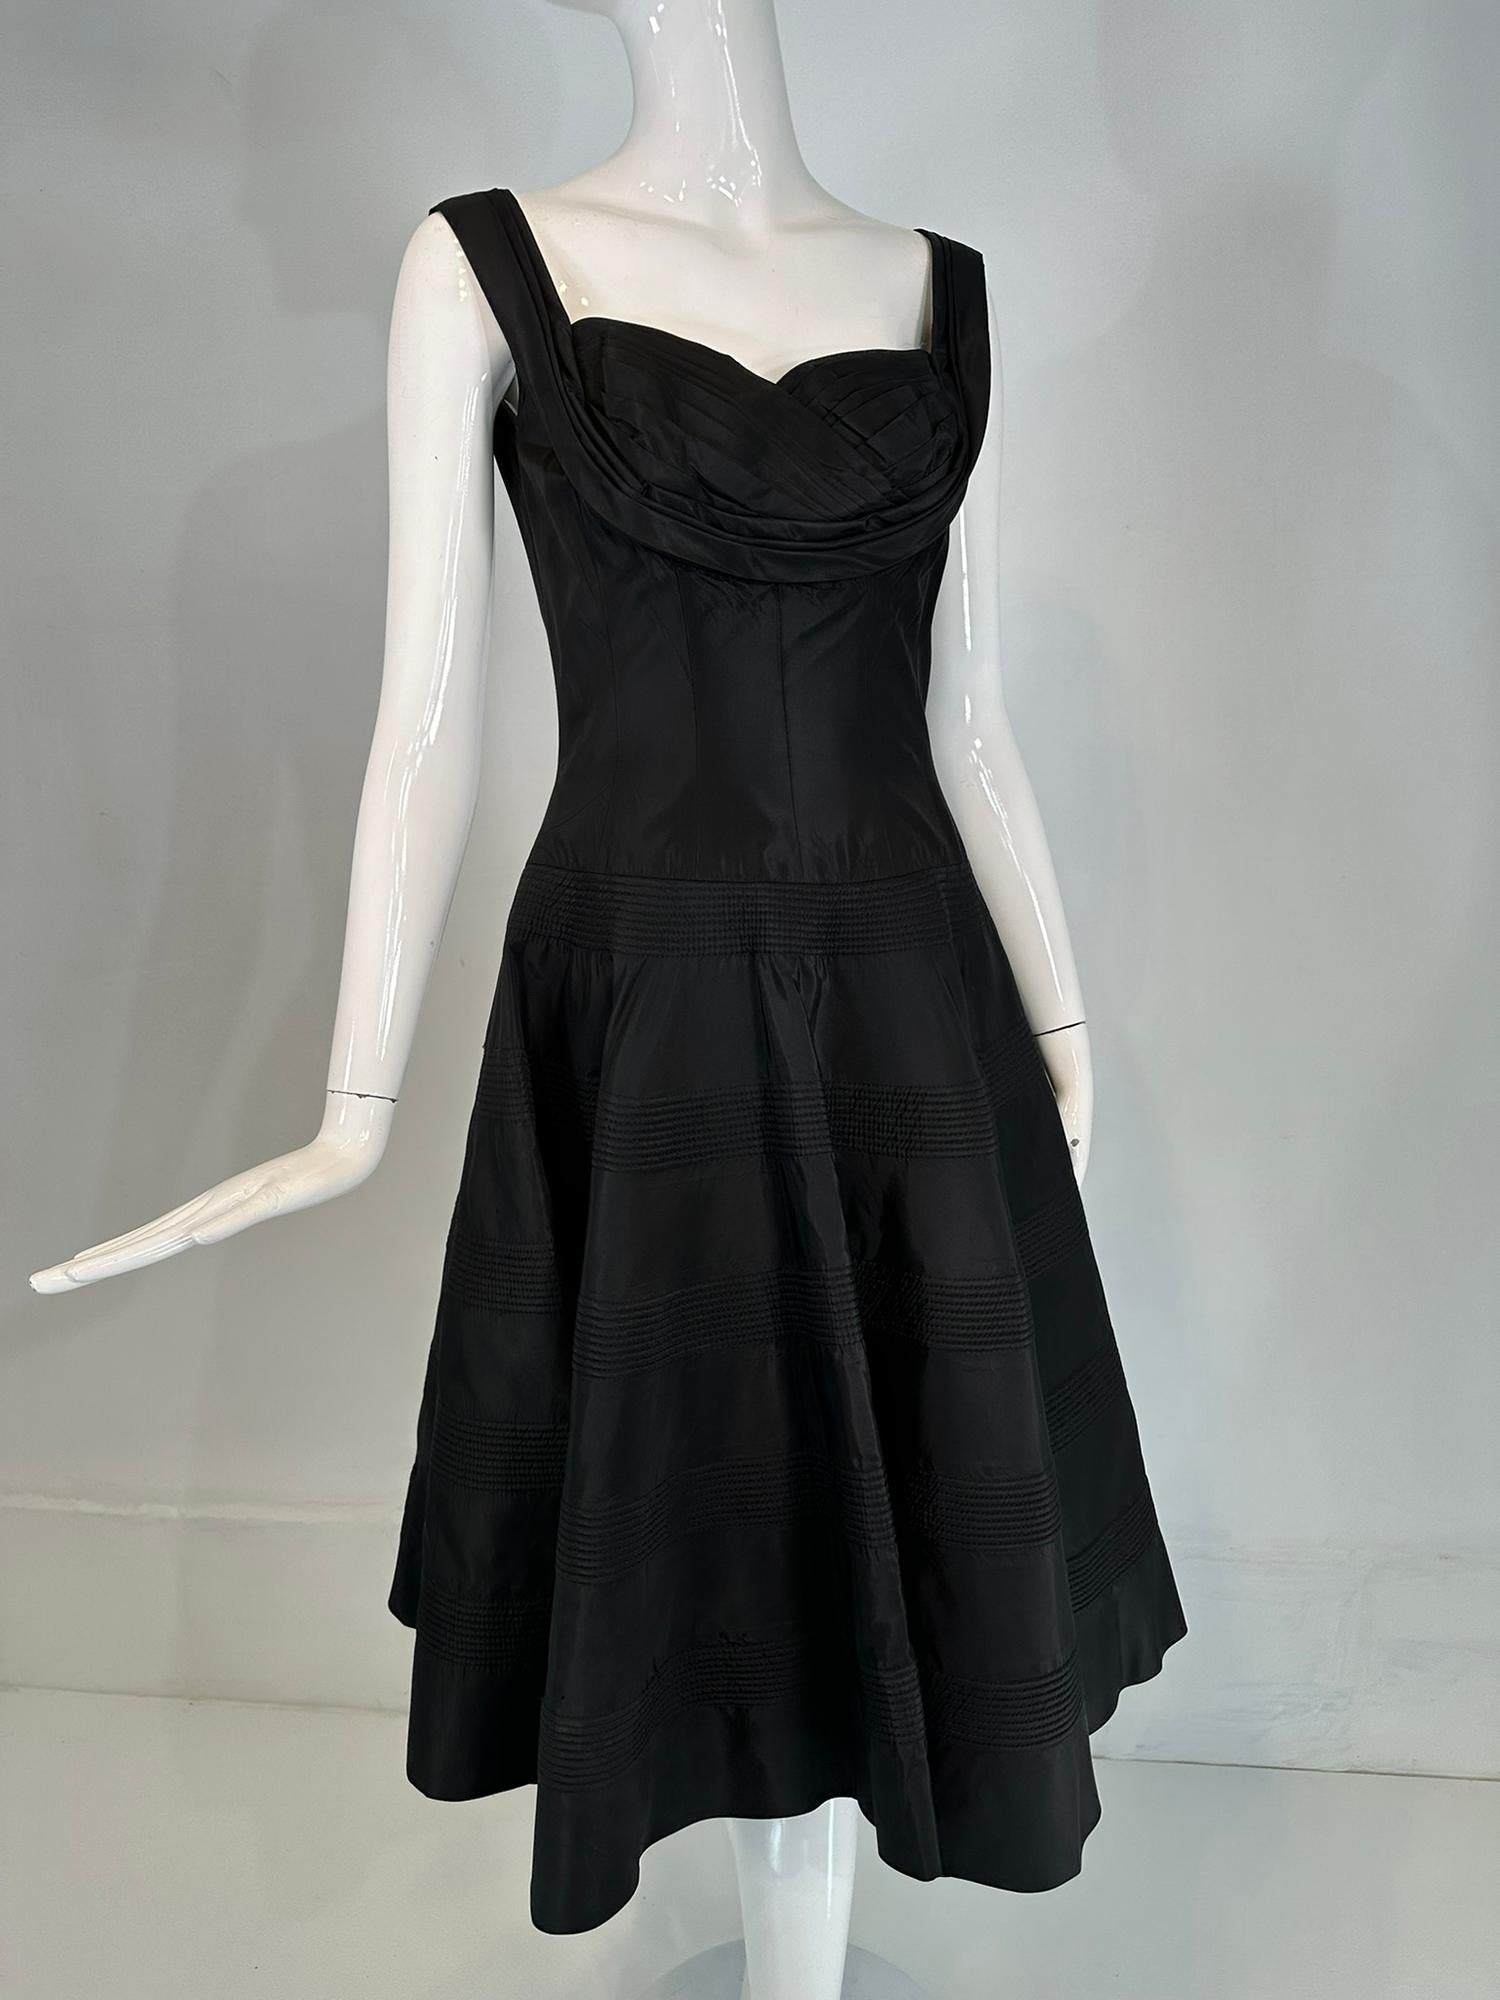 Fred Dance Originals 1950s robe de cocktail en taffetas noir avec corsage à découpes et jupe circulaire matelassée. Robe sans manches à encolure dégagée et à bretelles plissées qui épousent les épaules. Le corsage est ajusté, avec un décolleté en